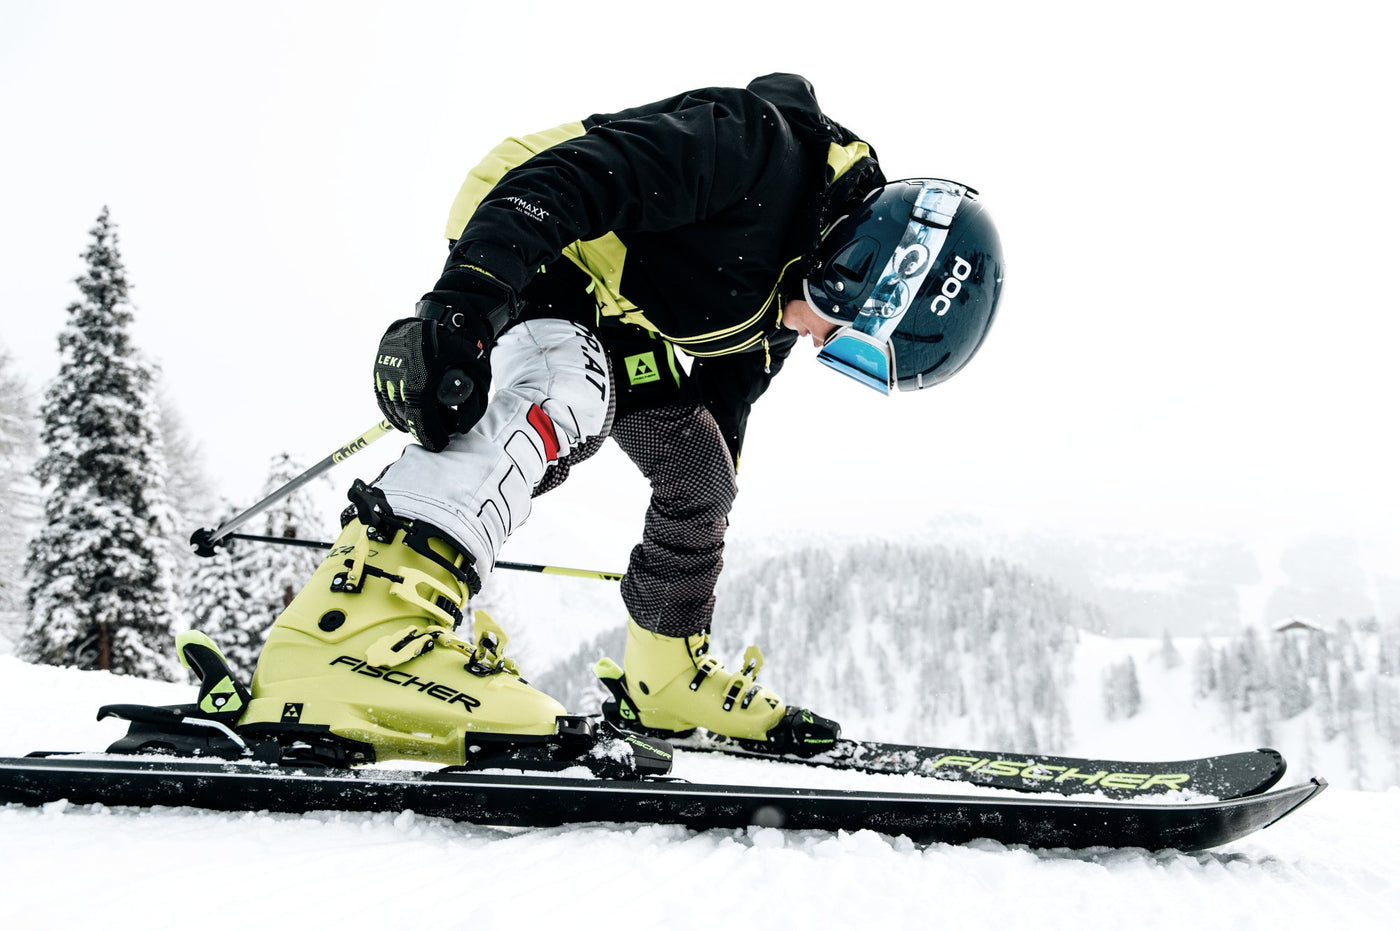 Power Ski - Junger Bub in Rennanzug bereitet sich auf Start vor